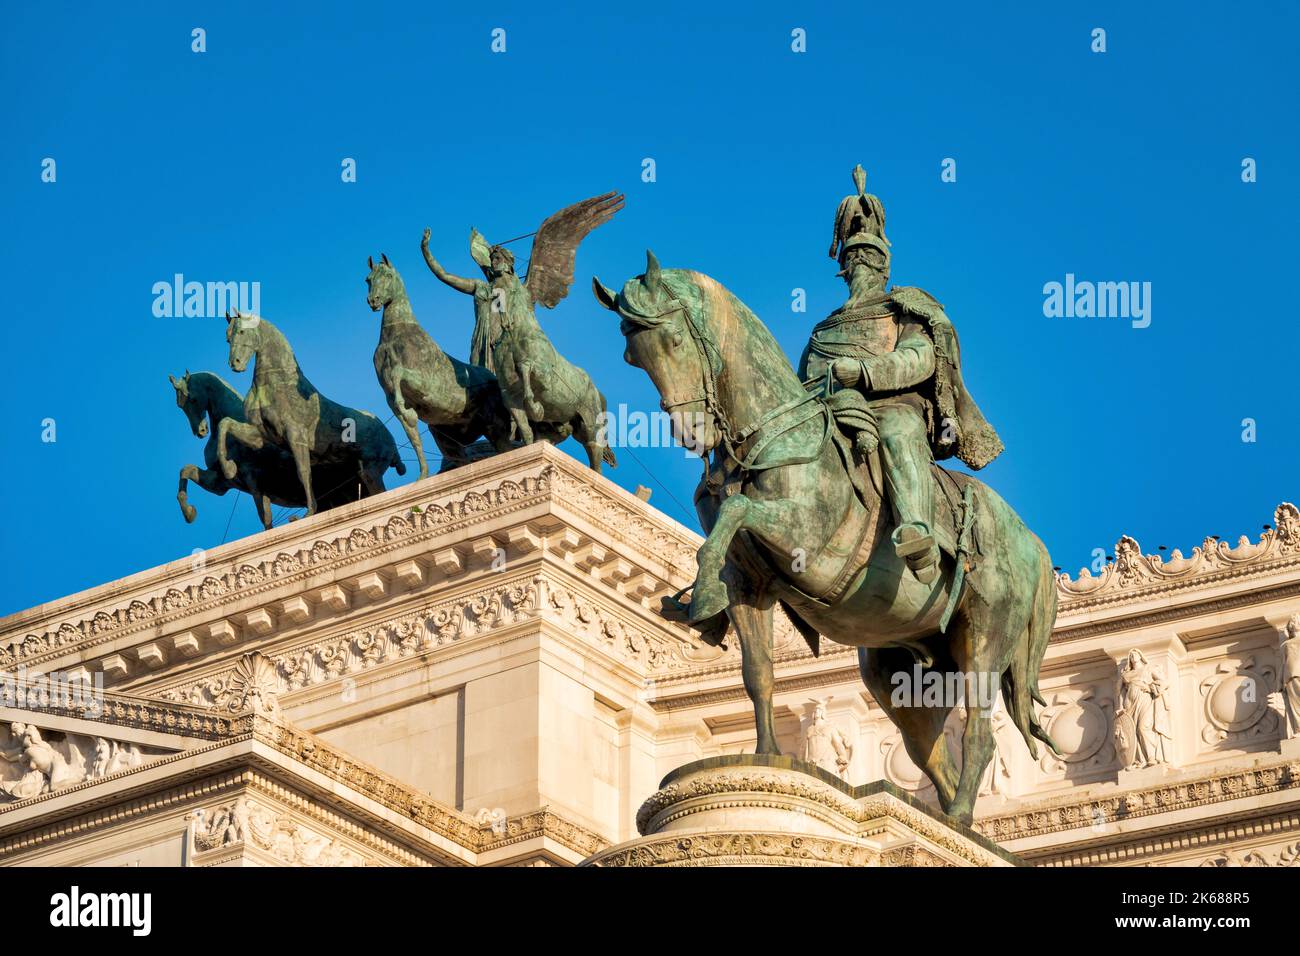 Sculpture équestre de Vittorio Emanuele II et de la déesse Victoria à l'intérieur de l'Altare della Patria, Rome Italie Banque D'Images